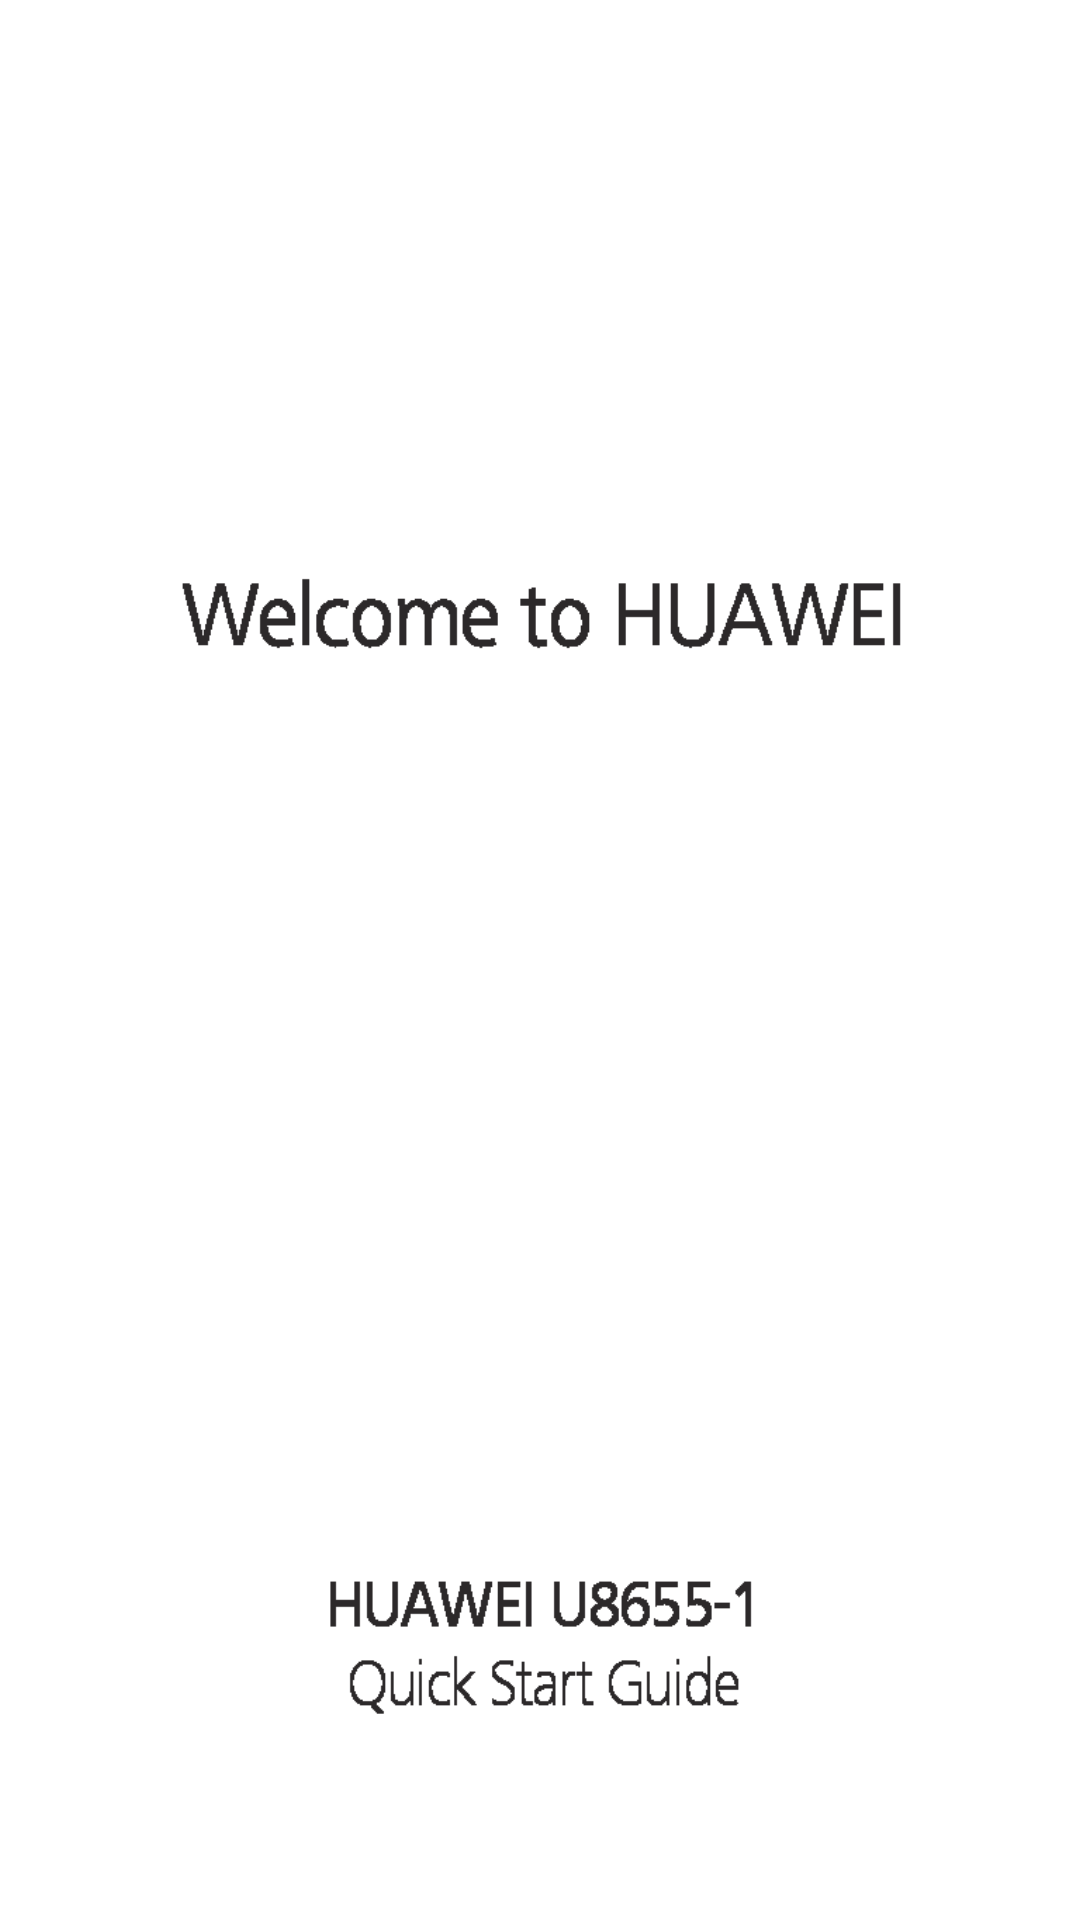 Huawei quick start Welcome to HUAWEI, HUAWEI U8655-1 Quick Start Guide 